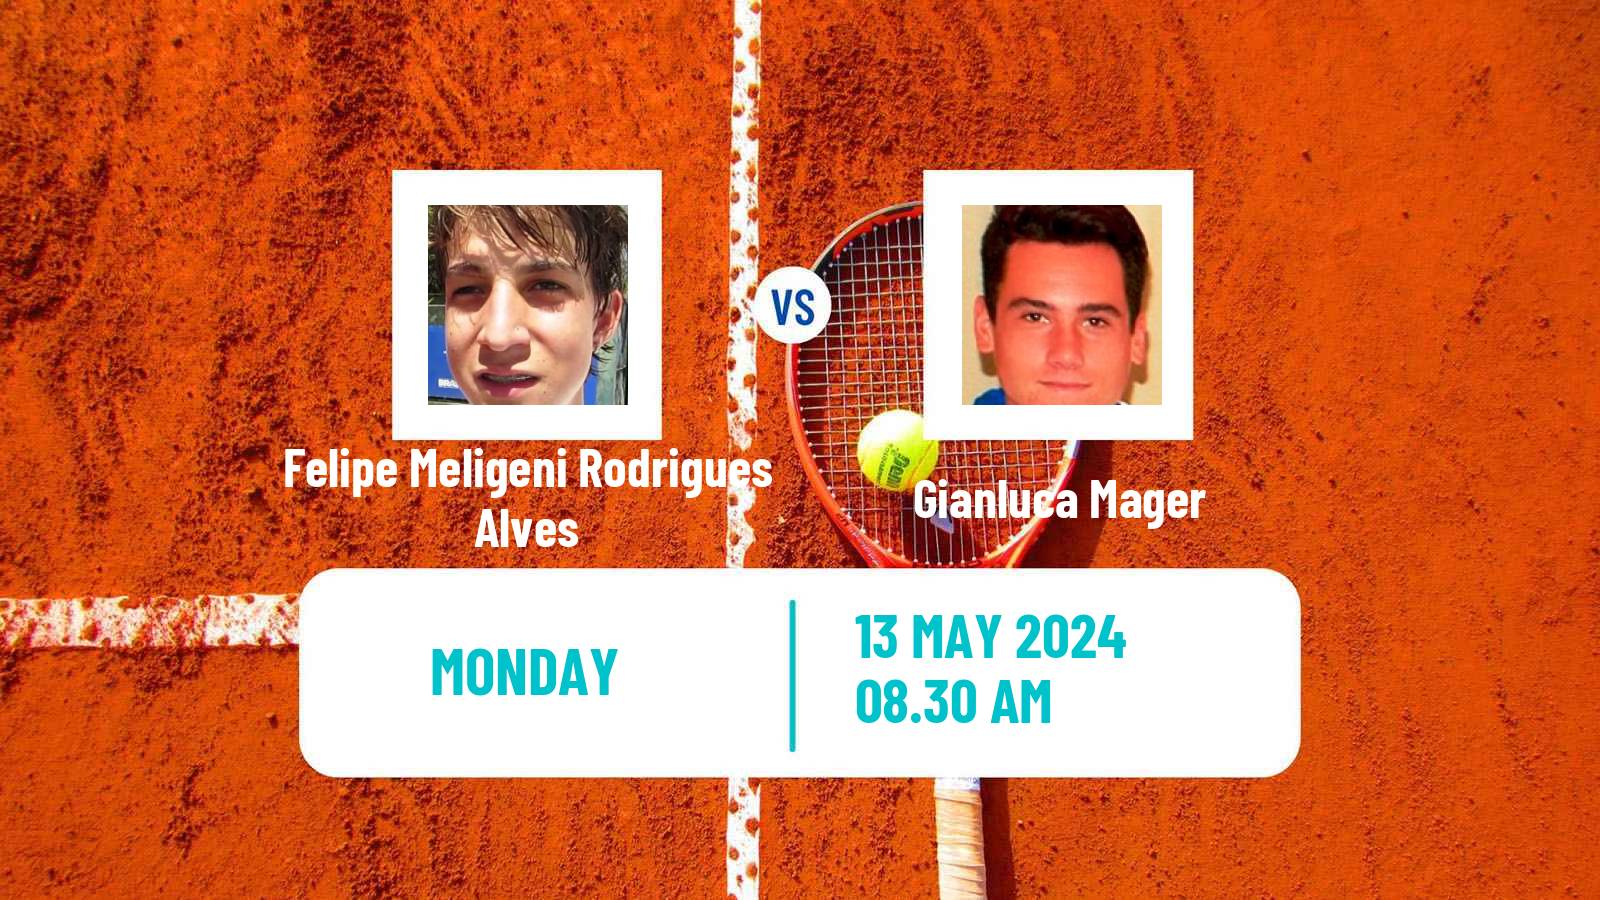 Tennis Turin 2 Challenger Men Felipe Meligeni Rodrigues Alves - Gianluca Mager